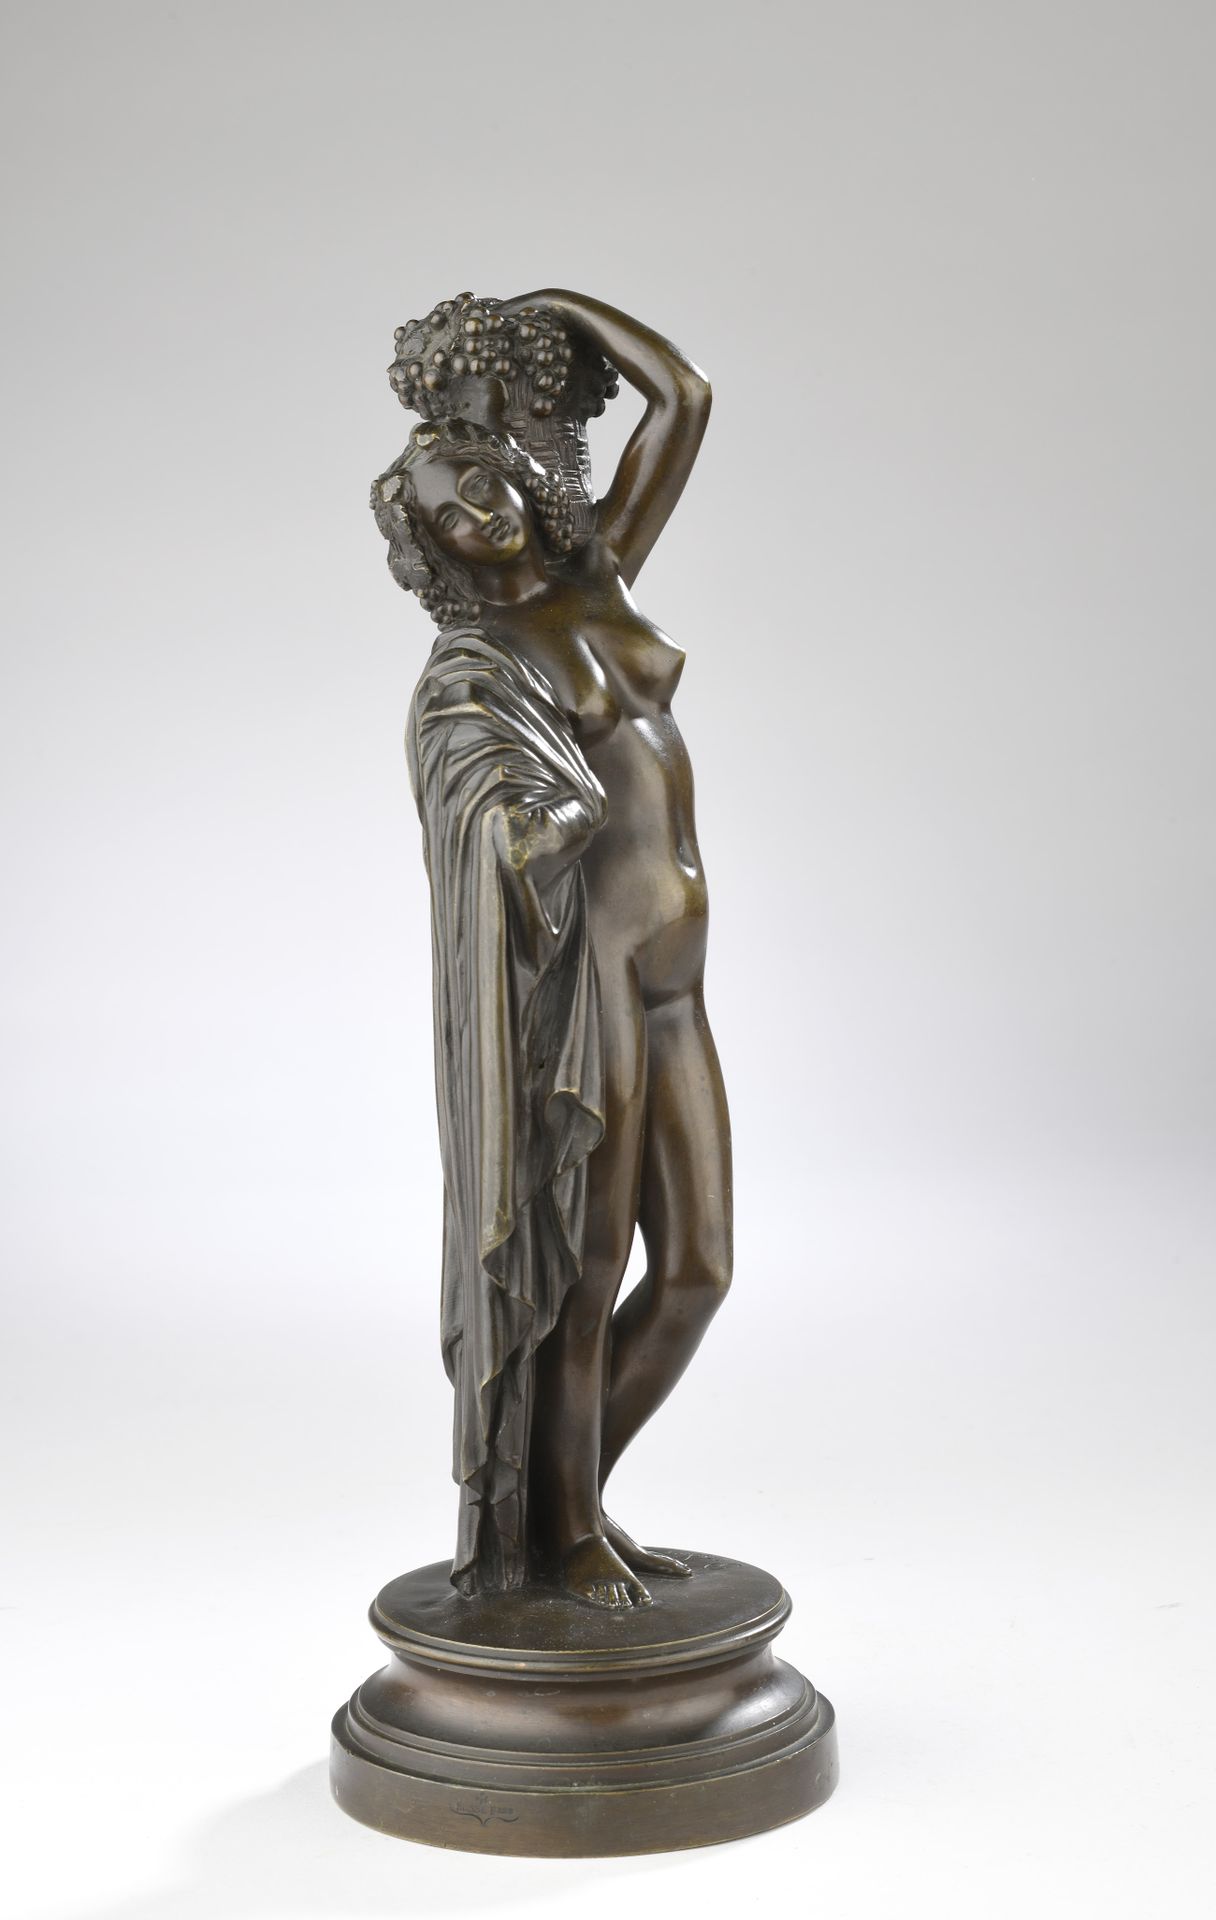 Null 詹姆斯-普拉迪尔 (1790-1852)
提着篮子的裸体女人 
棕色铜锈的青铜器
署名 "普拉迪尔
由Susse铸造，印有 "SUSSE FRES"。&hellip;